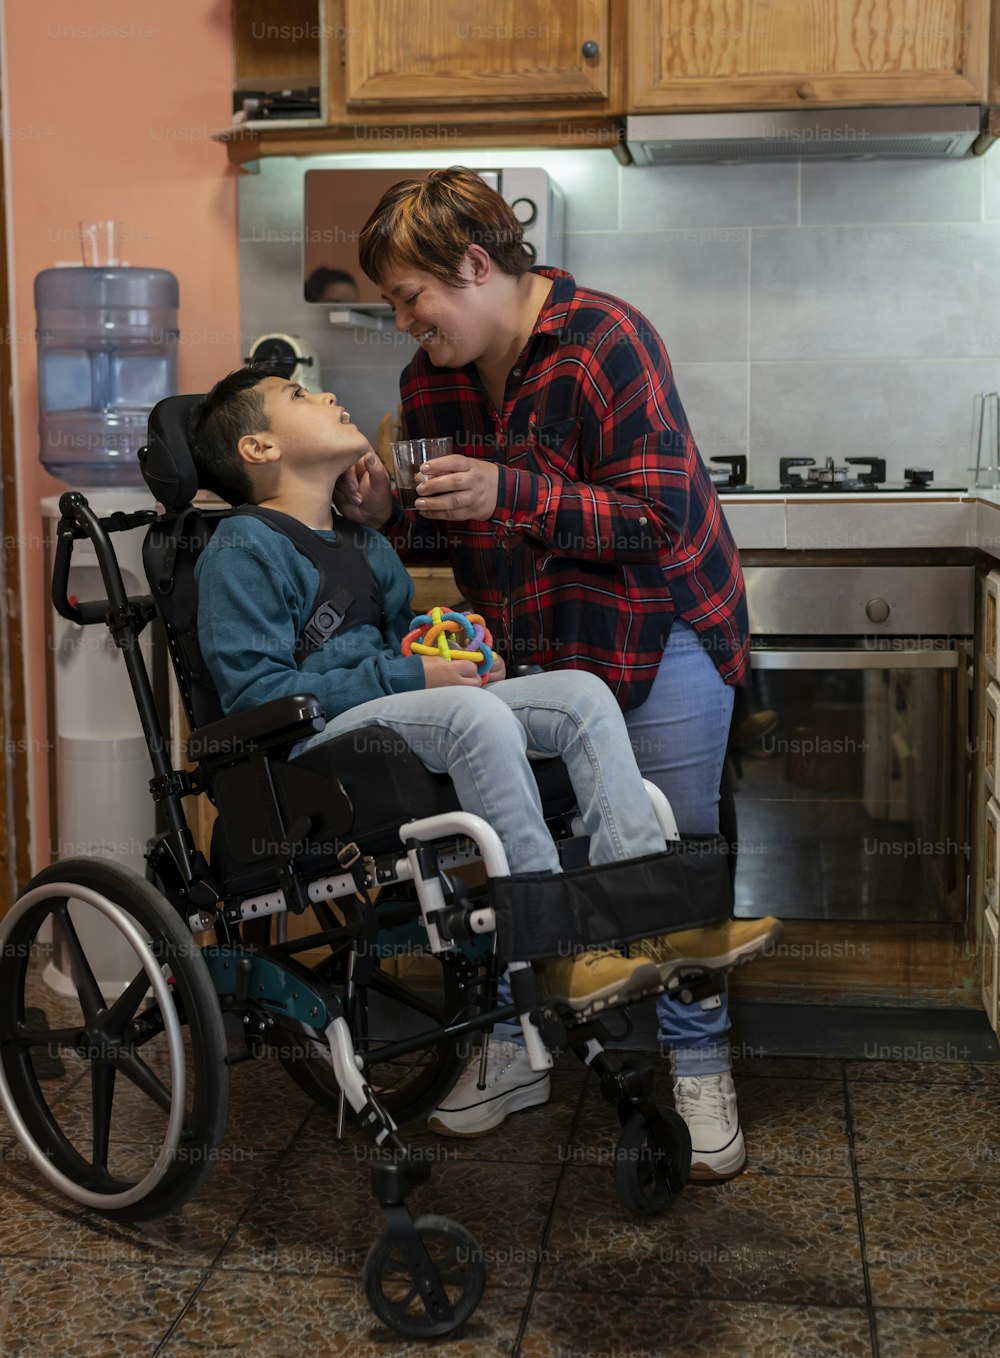 Madre cuidando a su hijo discapacitado en silla de ruedas en la cocina. - Concepto de atención sanitaria y discapacidad -